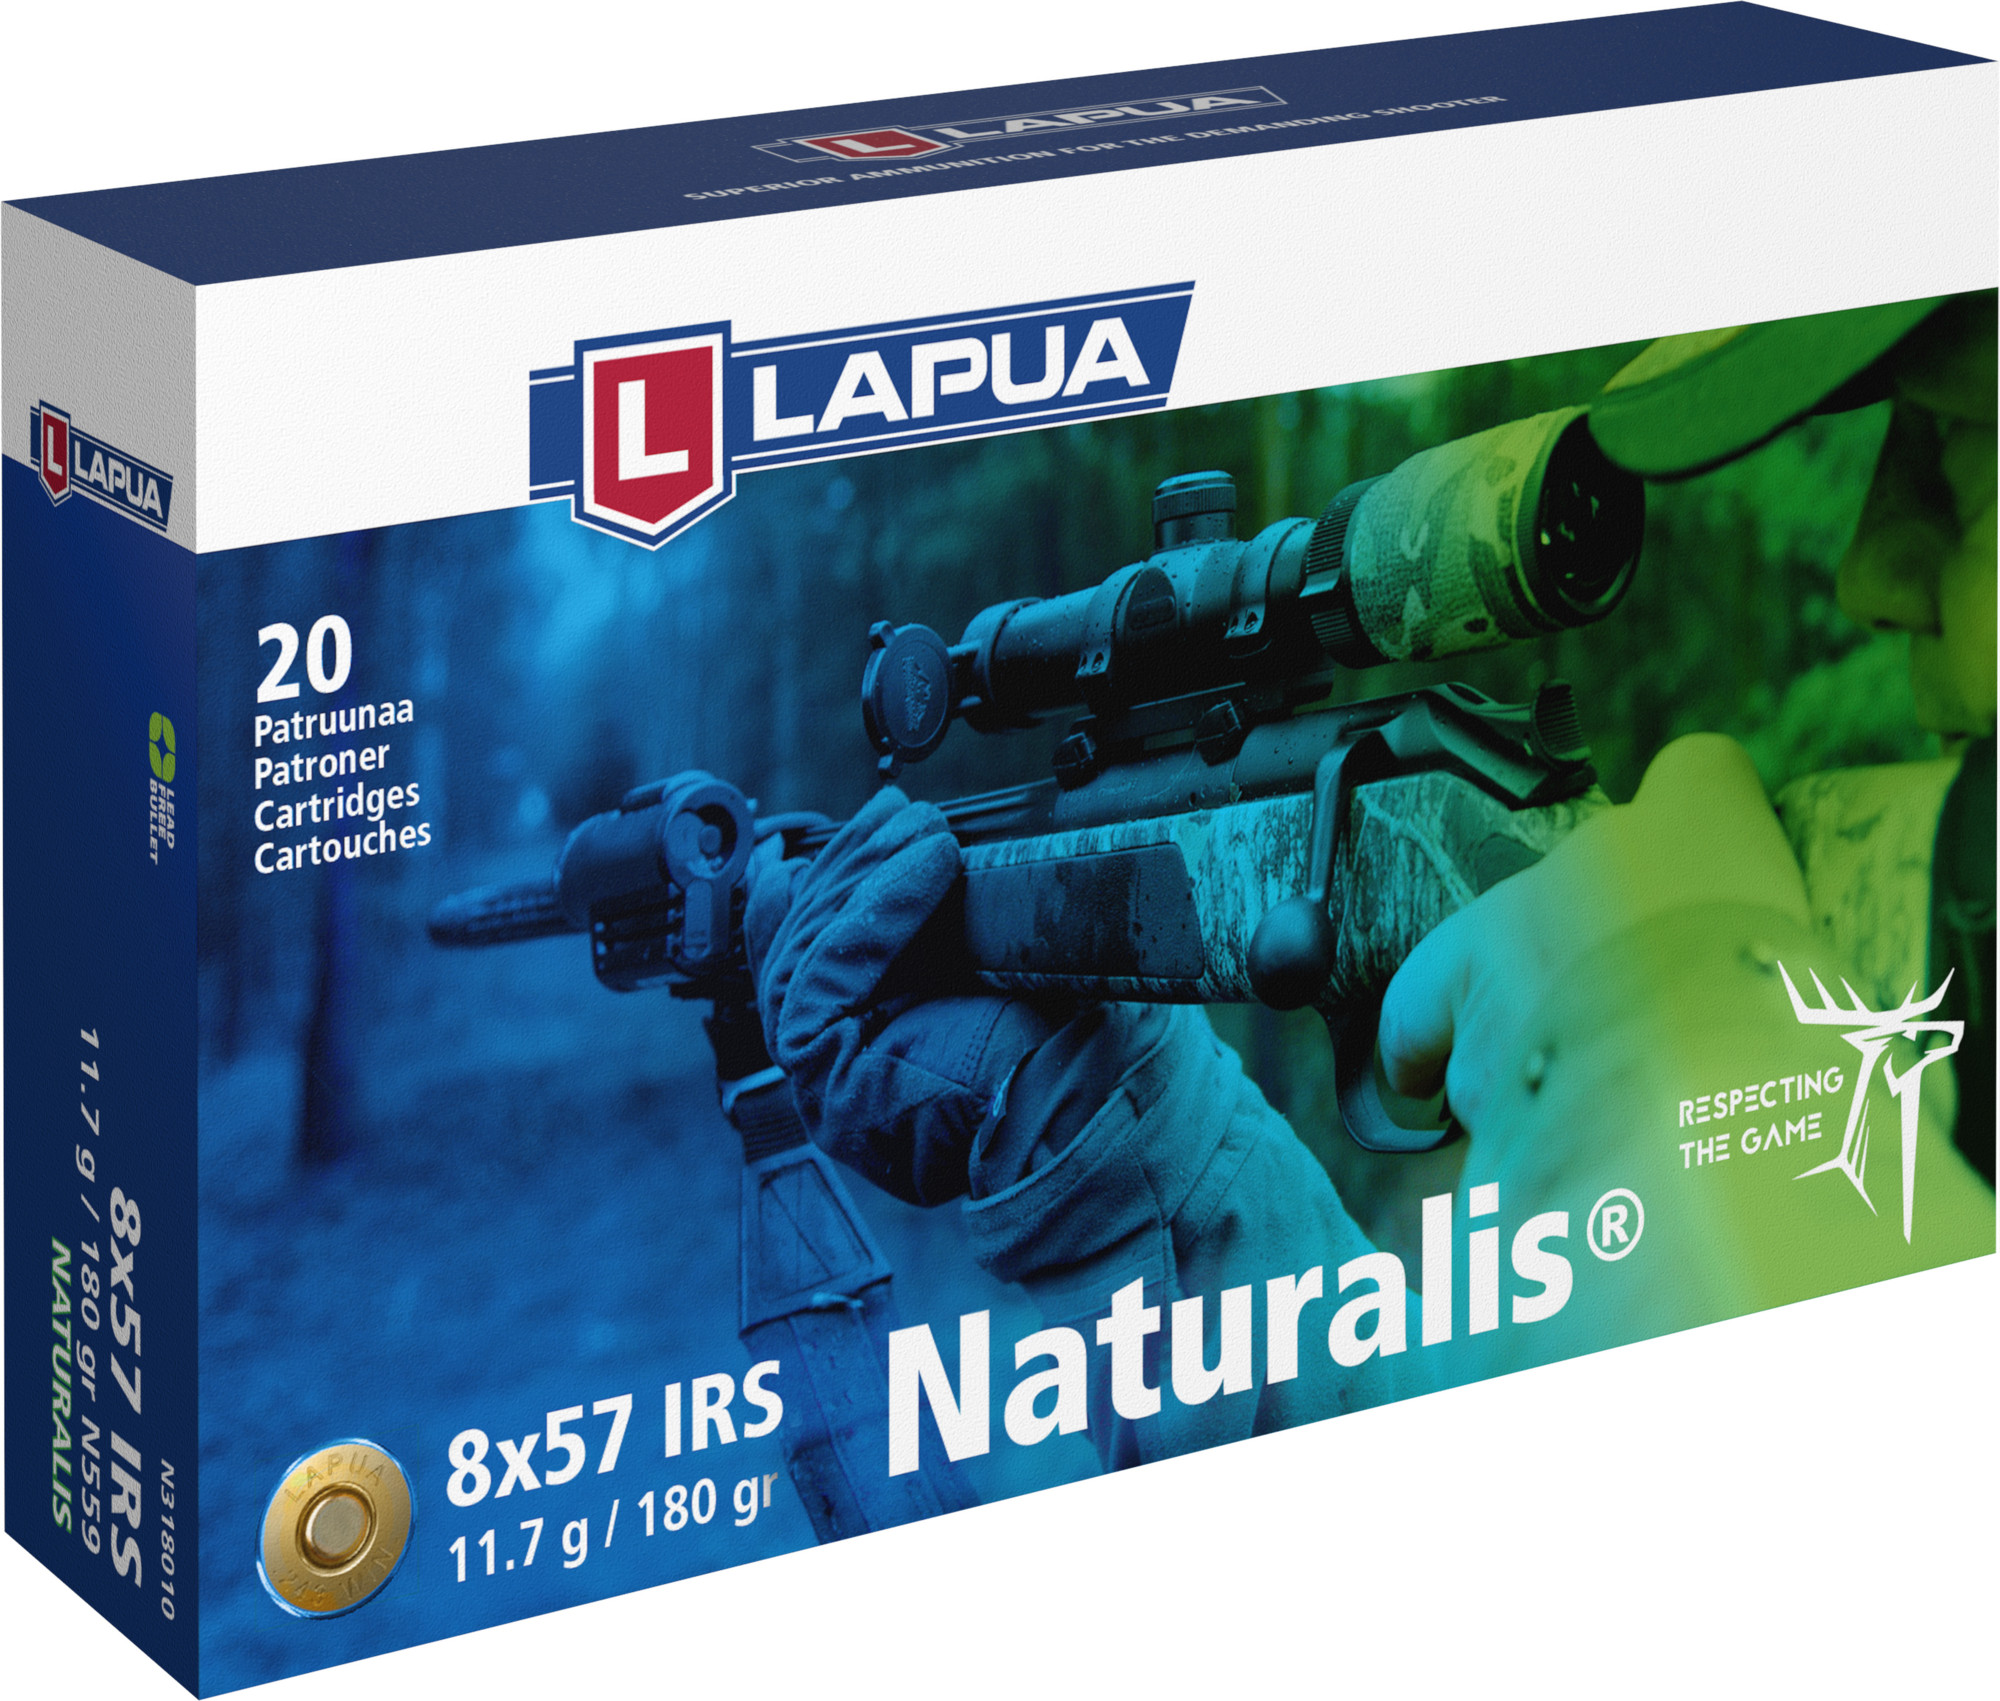 Lapua 8x57 IRS Naturalis 11,6 g patruuna 20 kpl/rs